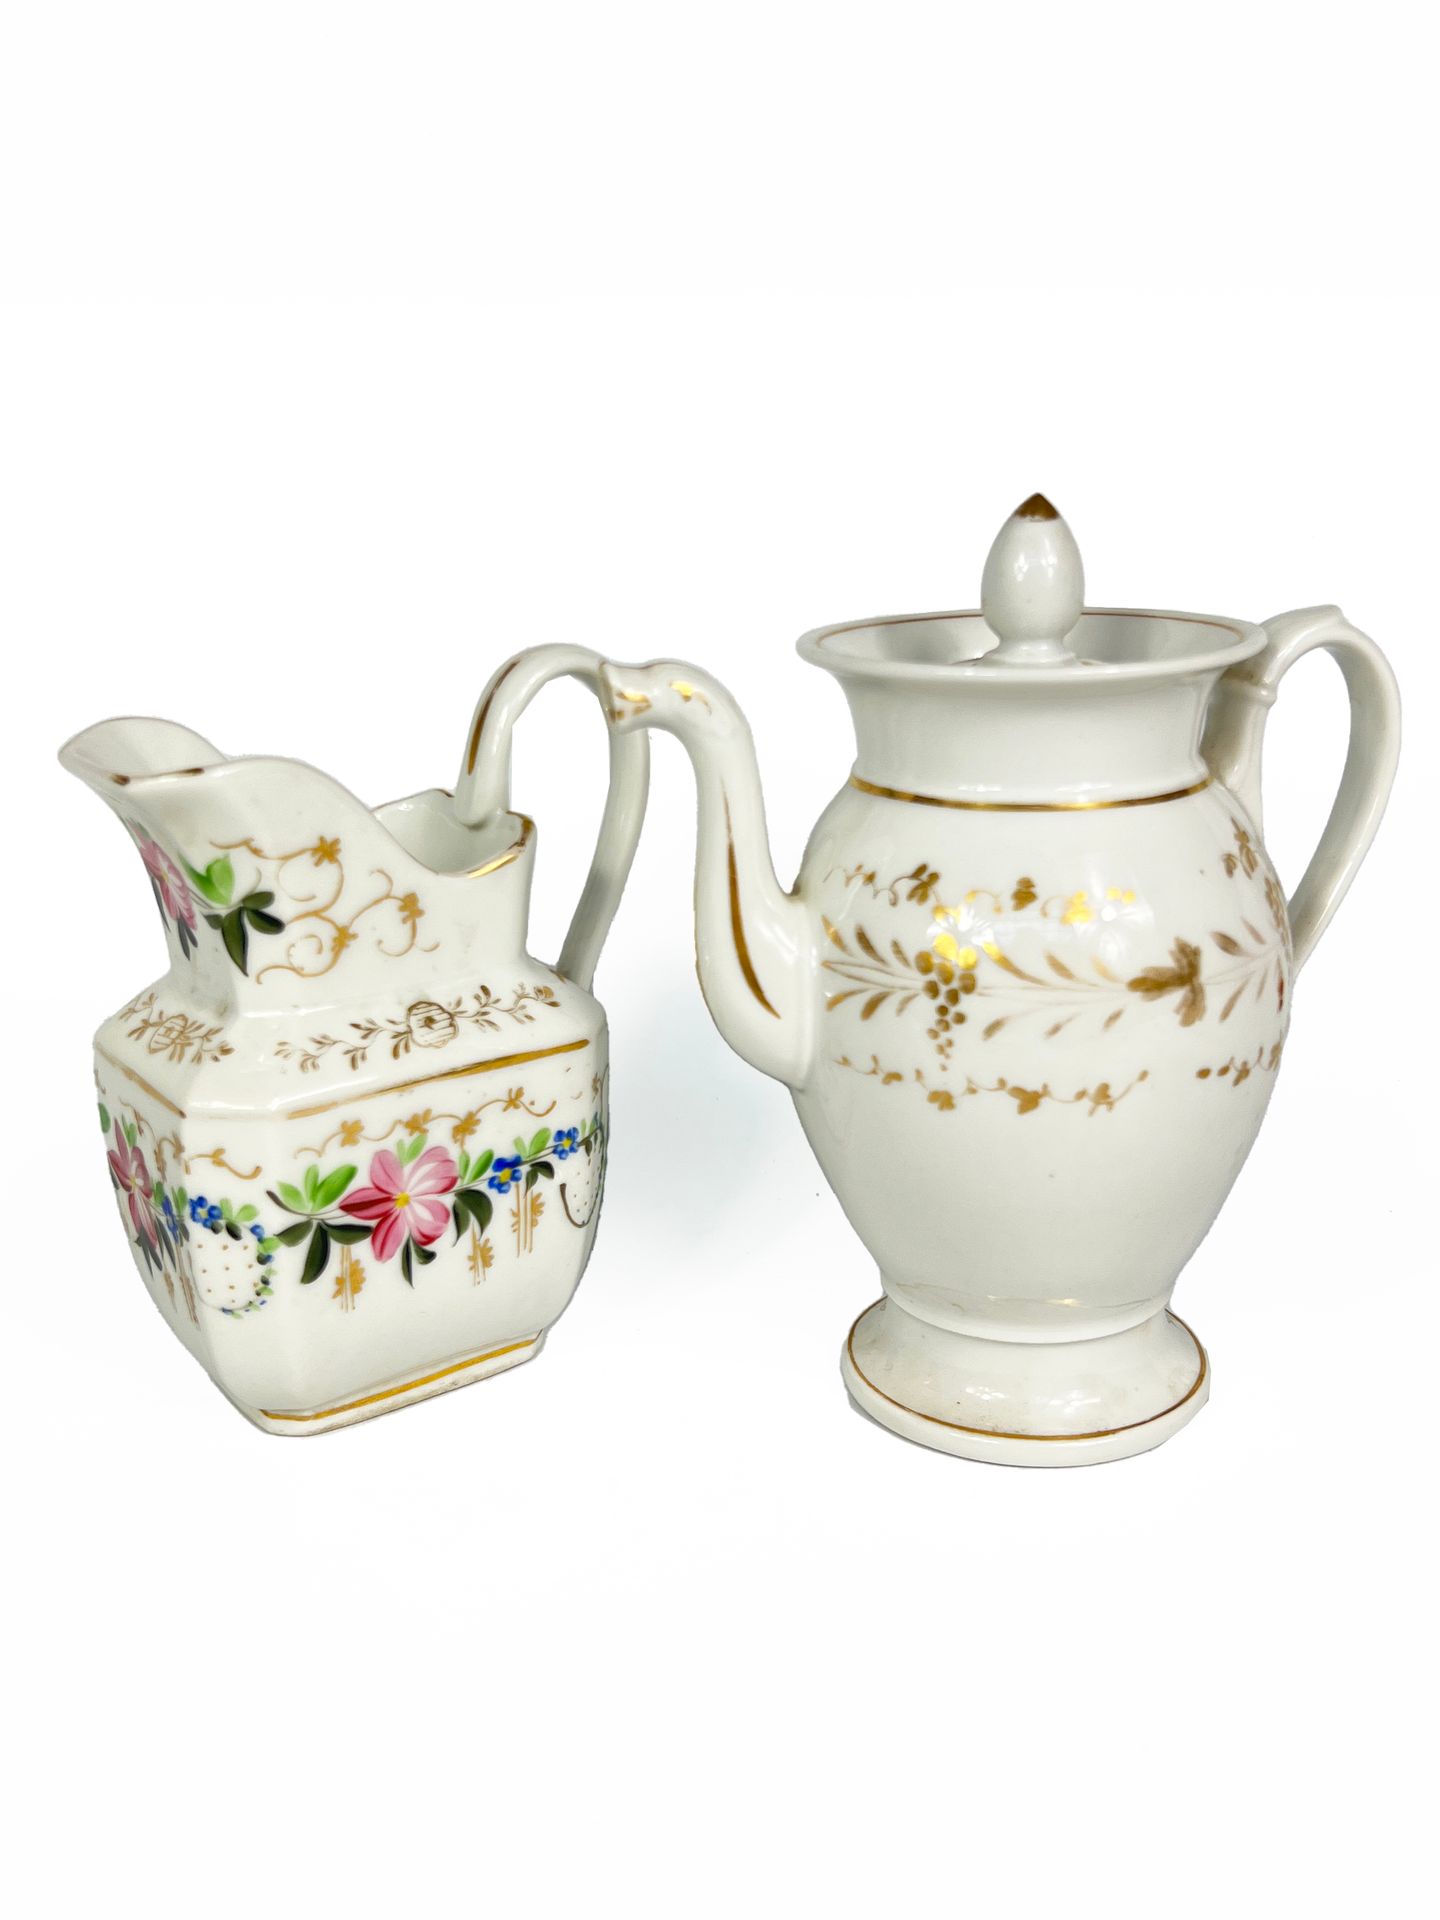 Null PARÍS, siglo XIX

Juego de una tetera de porcelana y una jarra de leche con&hellip;